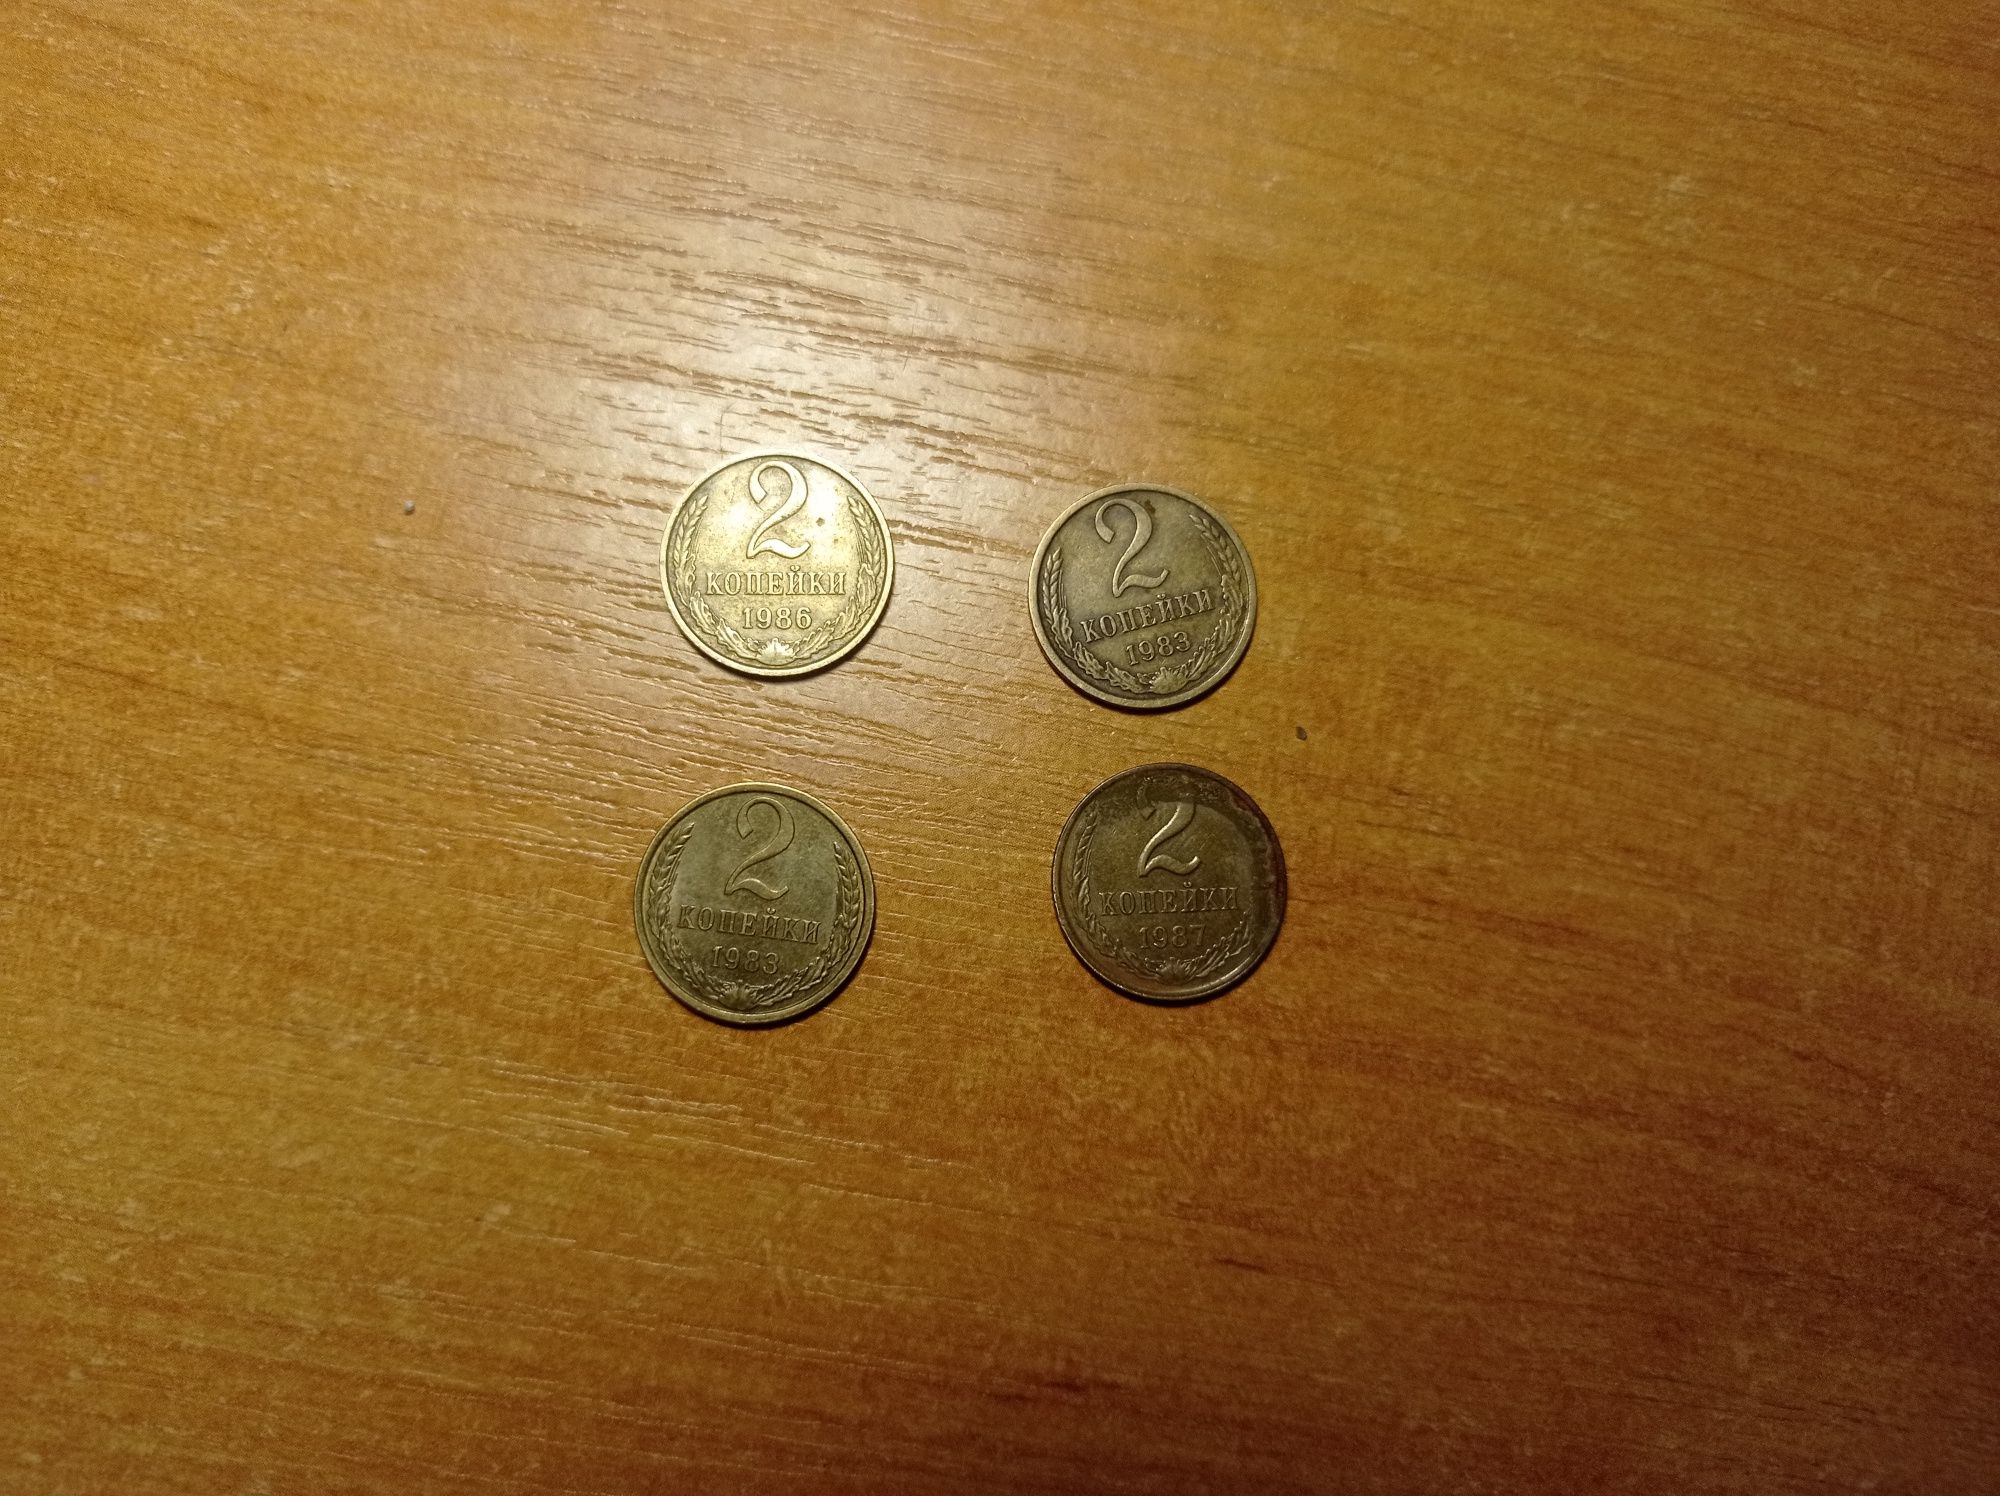 Обмен монет (описание)